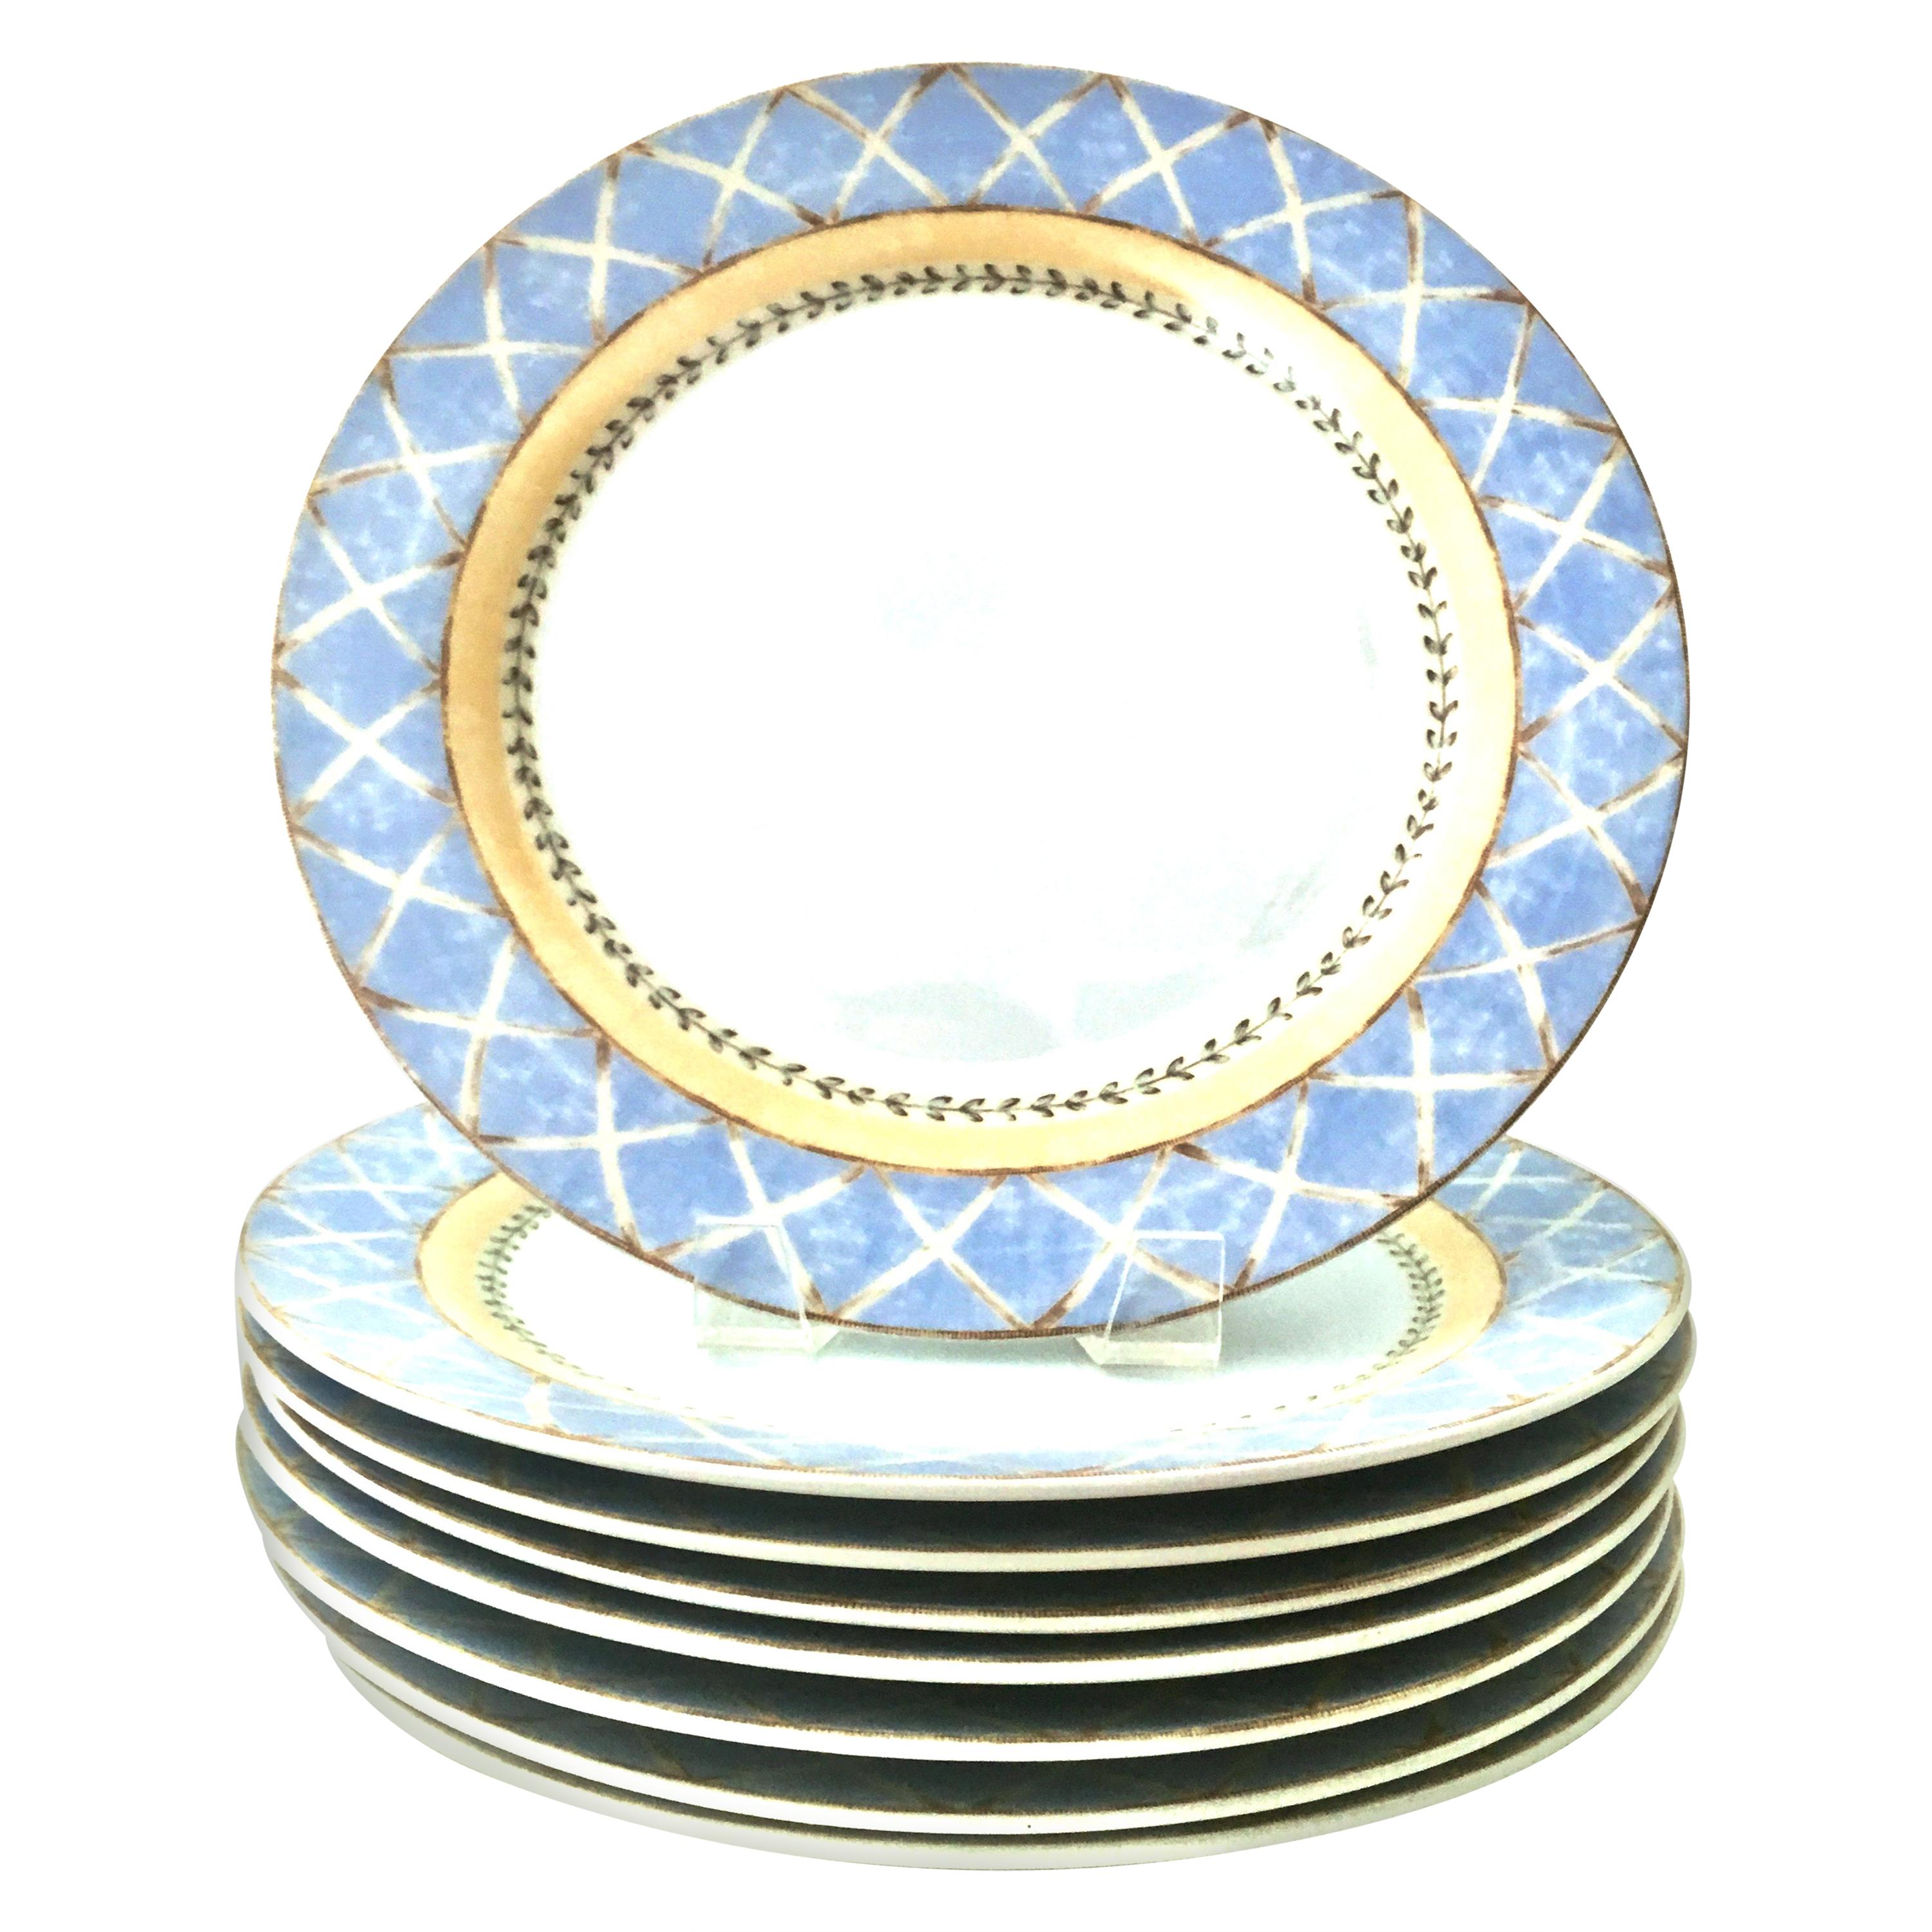 20th century porcelain dinner plates 